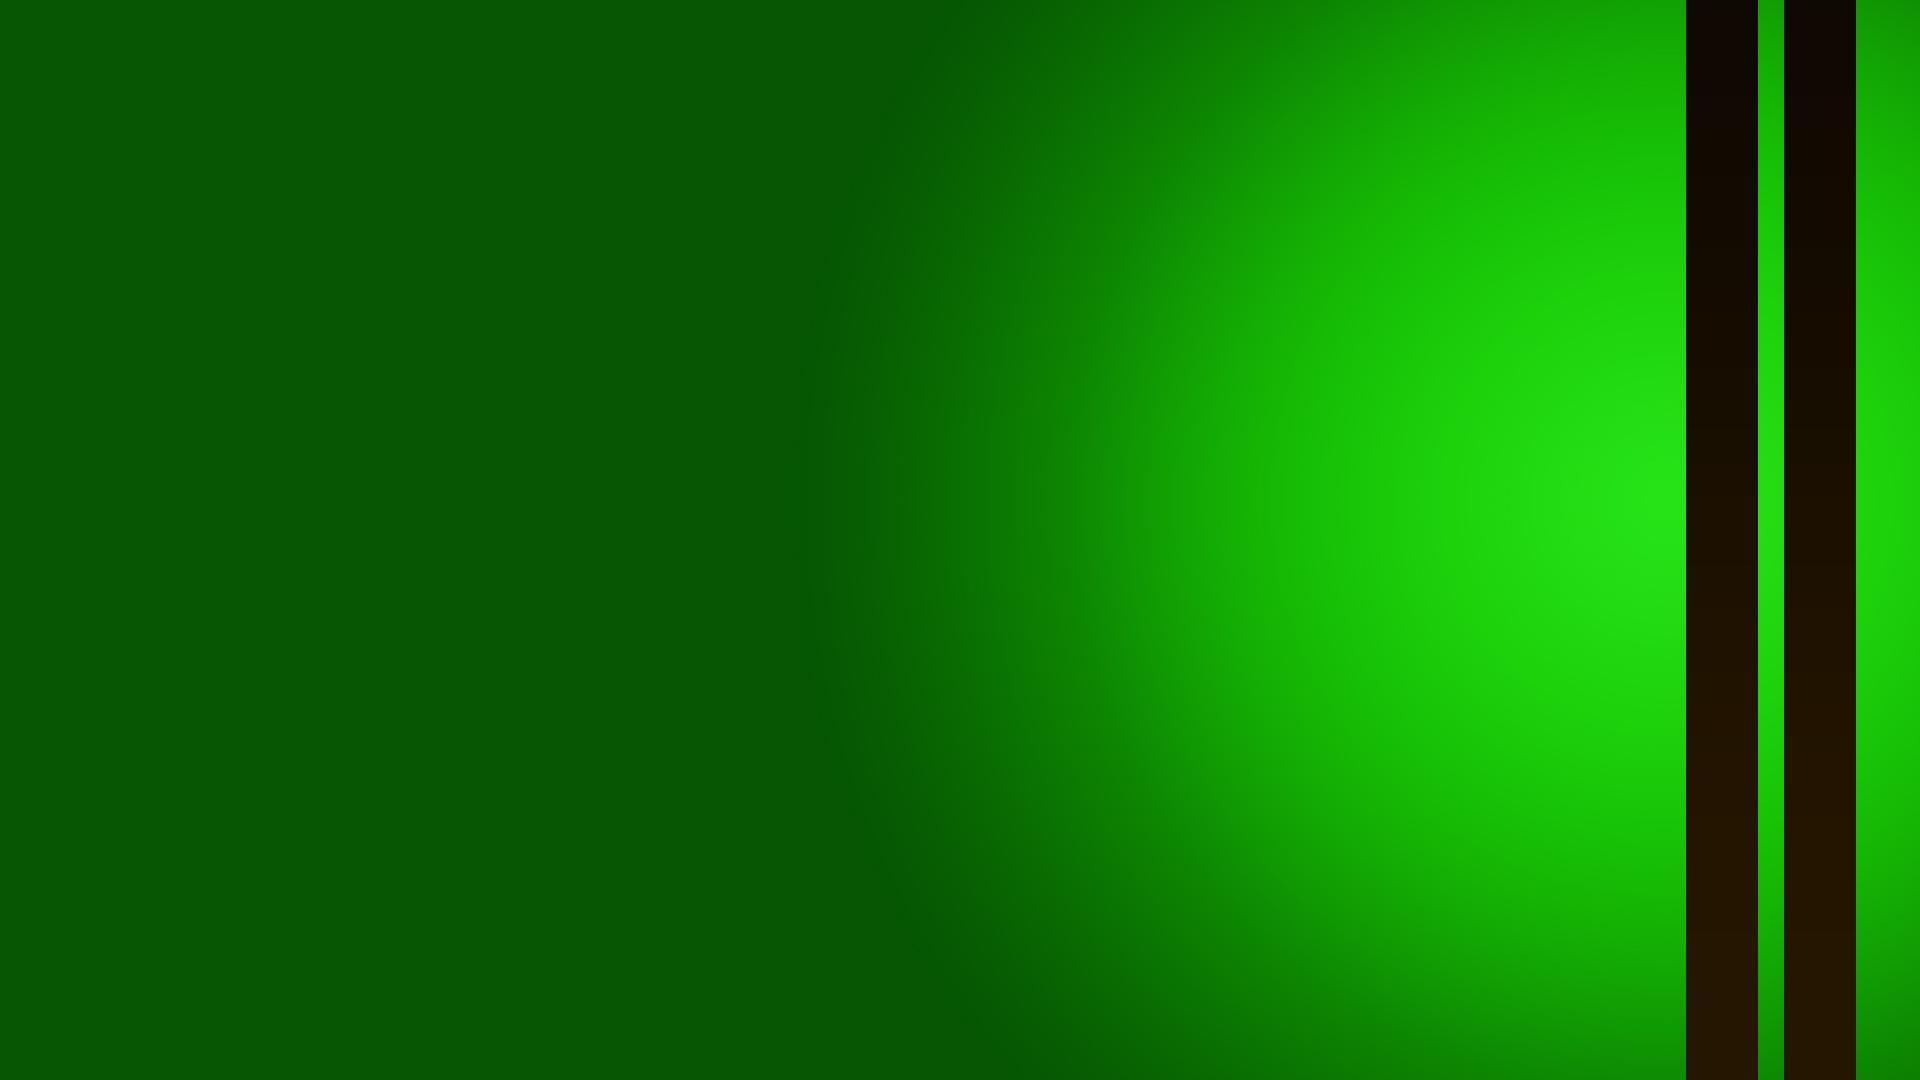 Digital Green wallpaper